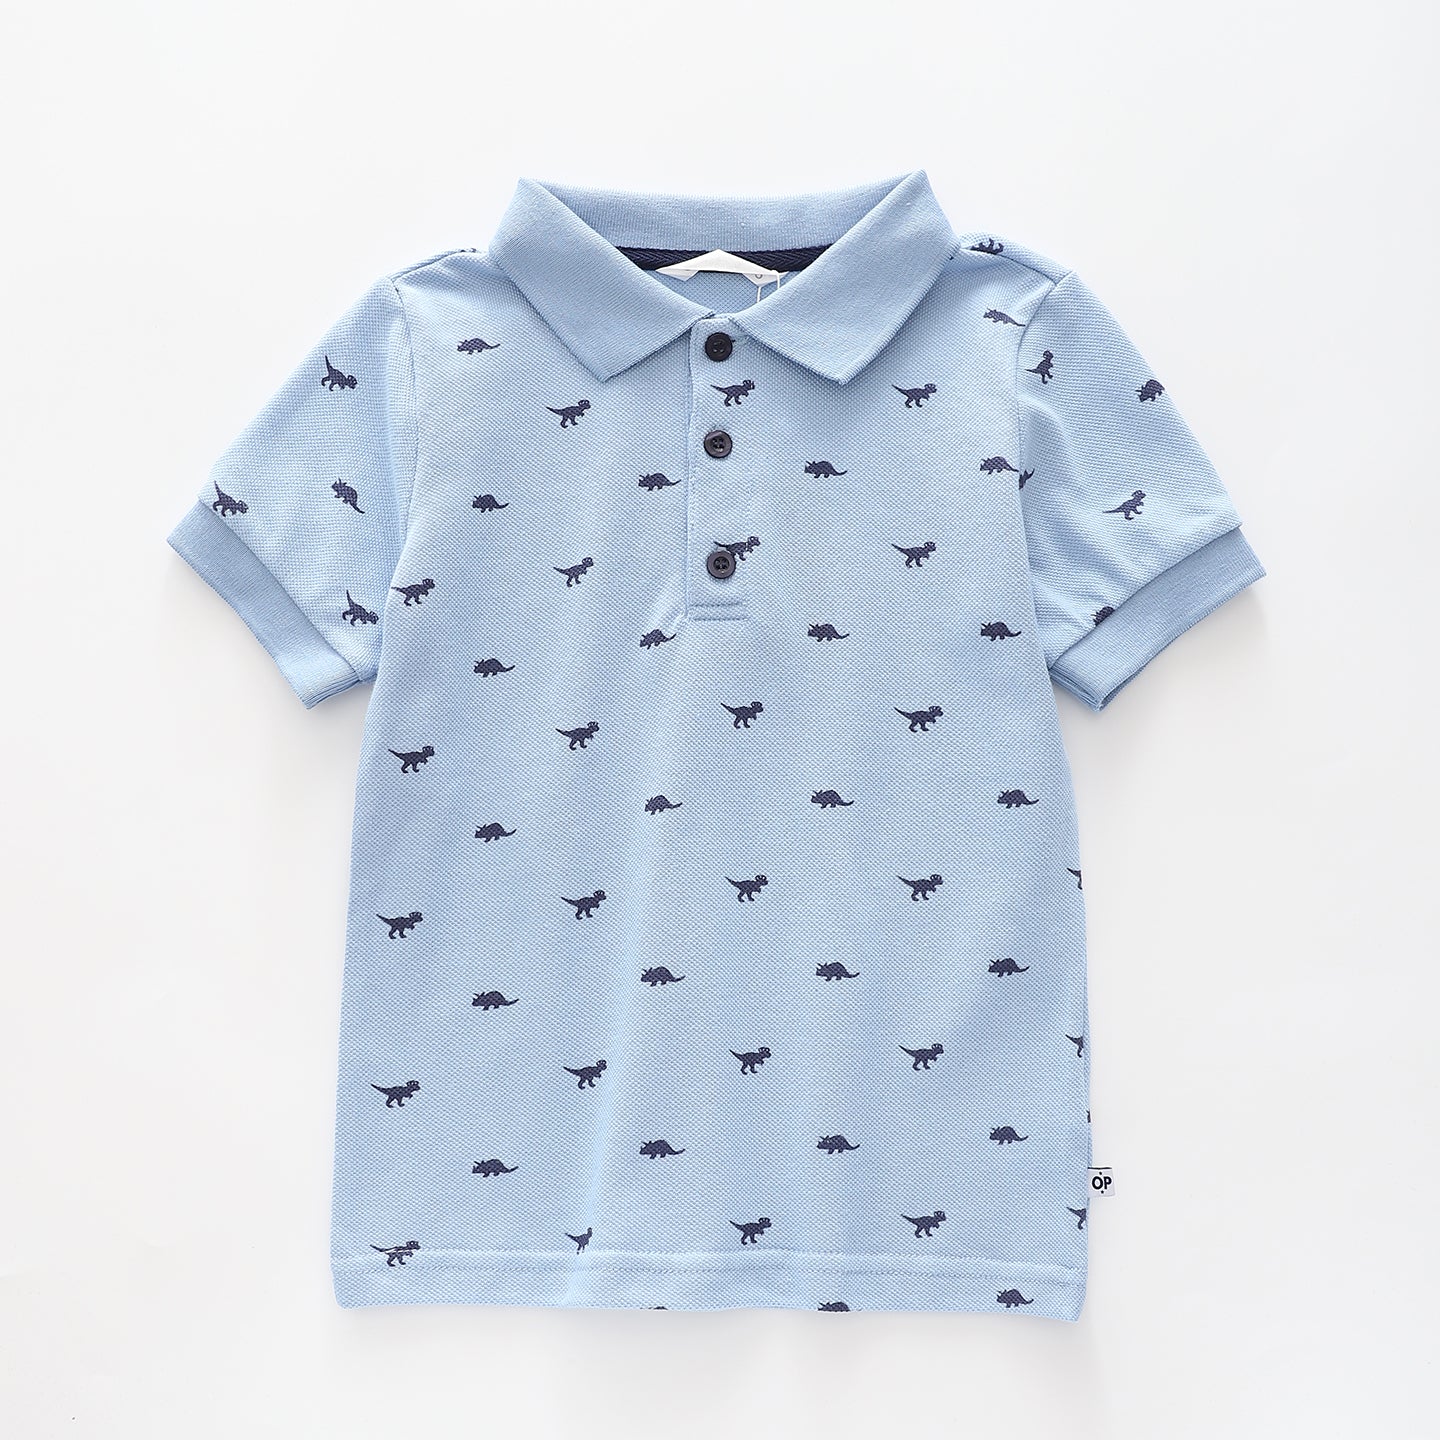 Boy's Sky Blue Polo Shirt With Dinosaur Print